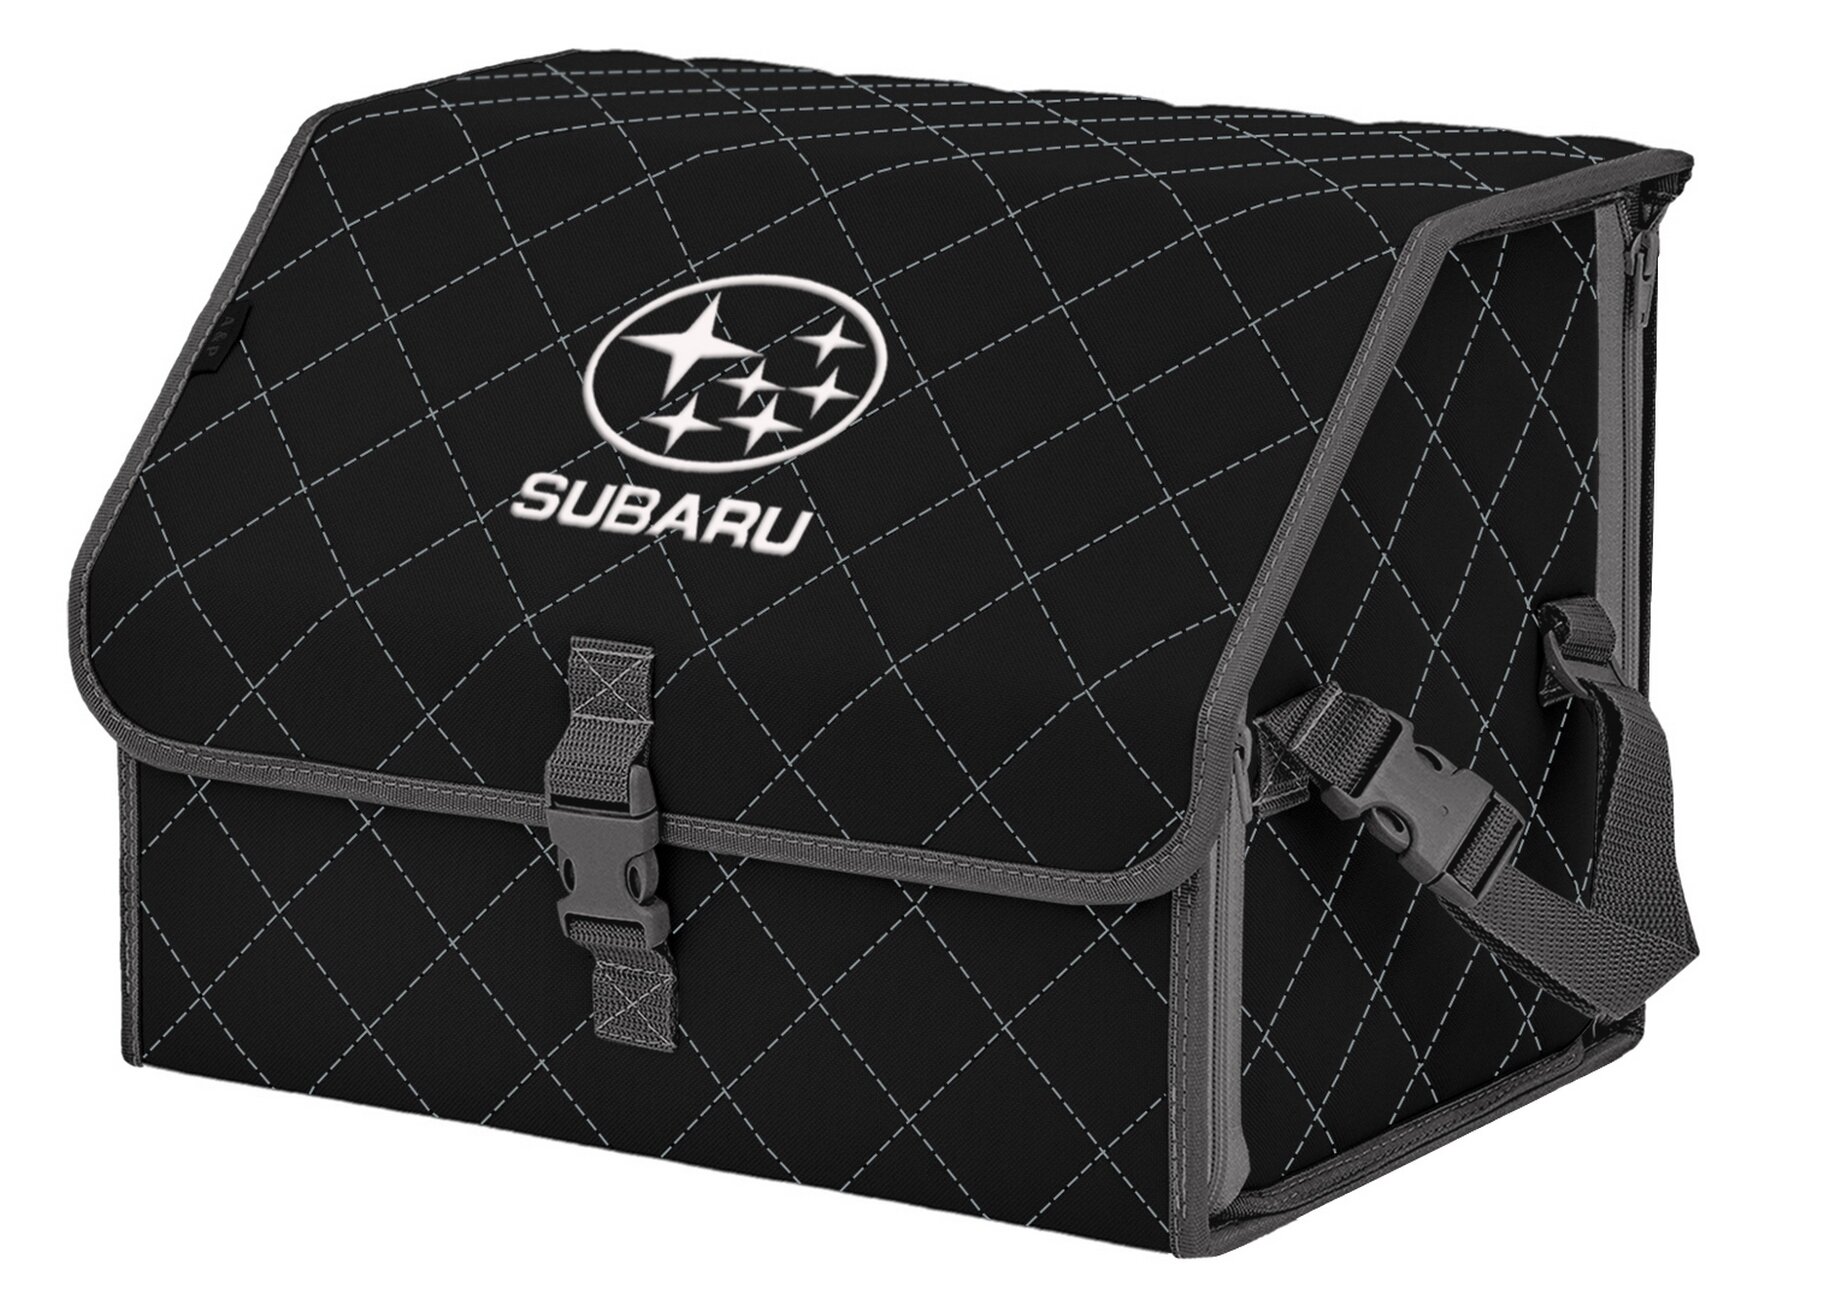 Органайзер-саквояж в багажник "Союз" (размер M). Цвет: черный с серой прострочкой Ромб и вышивкой Subaru (Субару).